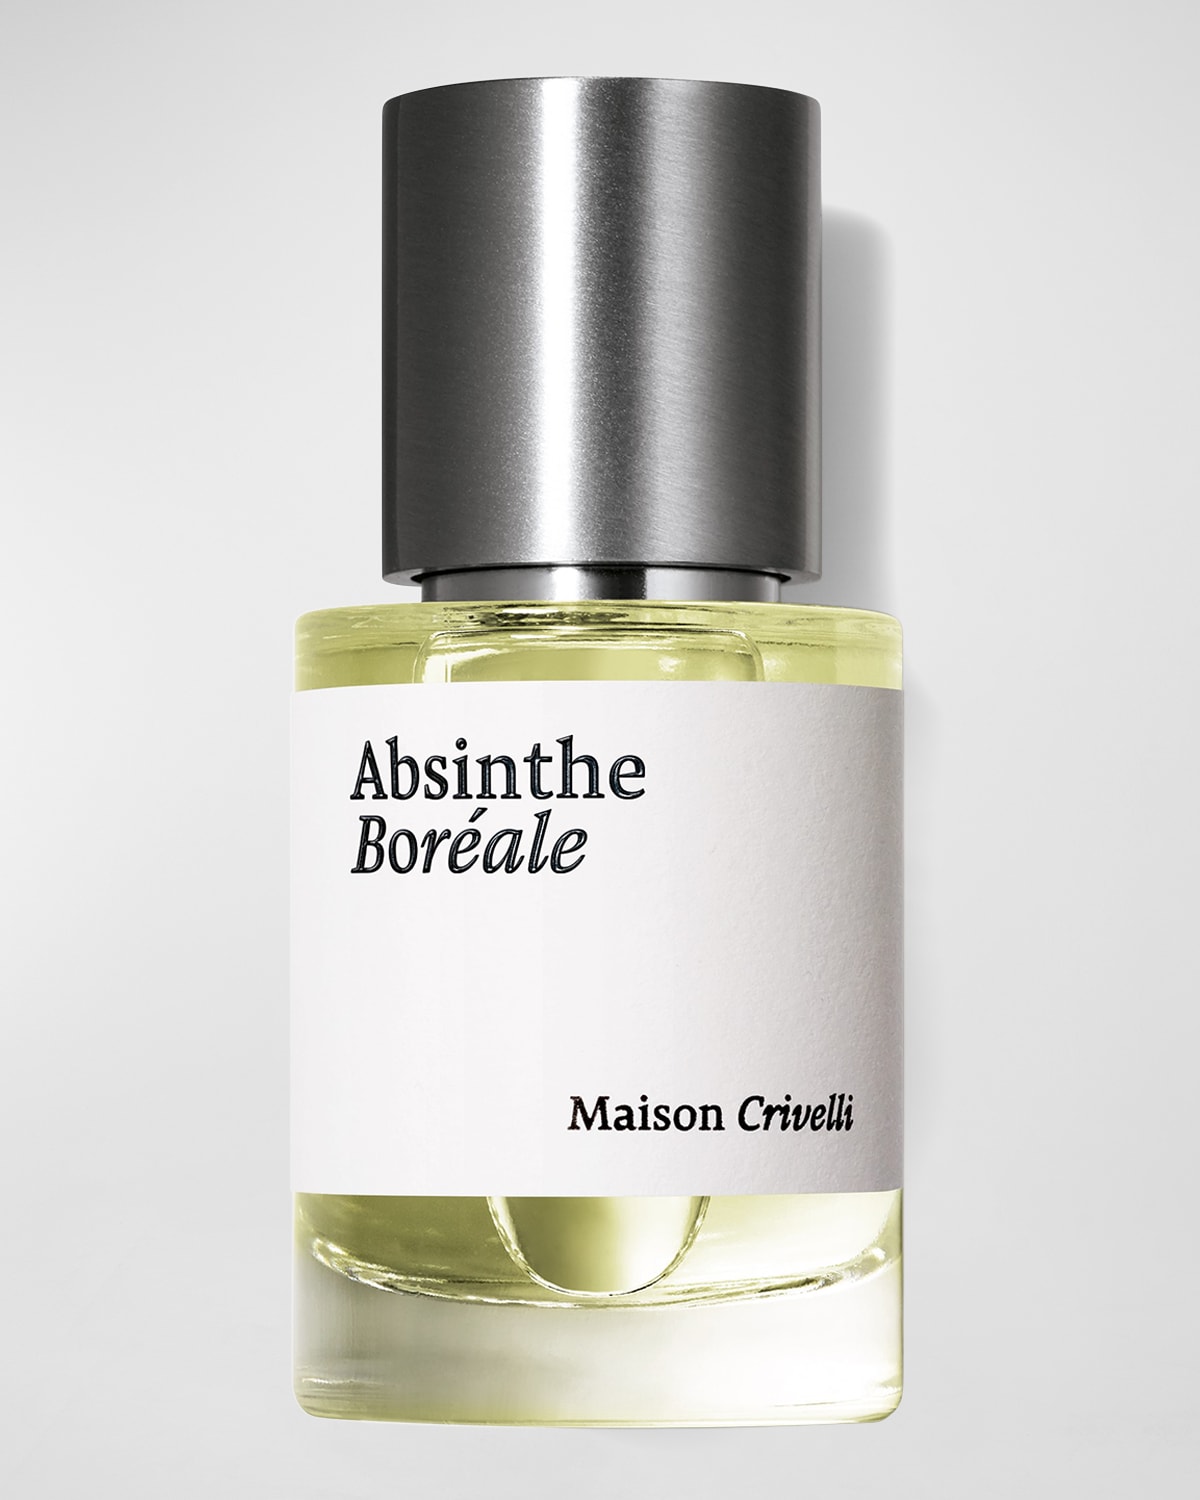 Maison Crivelli 1 oz. Absinthe Boreale Eau de Parfum